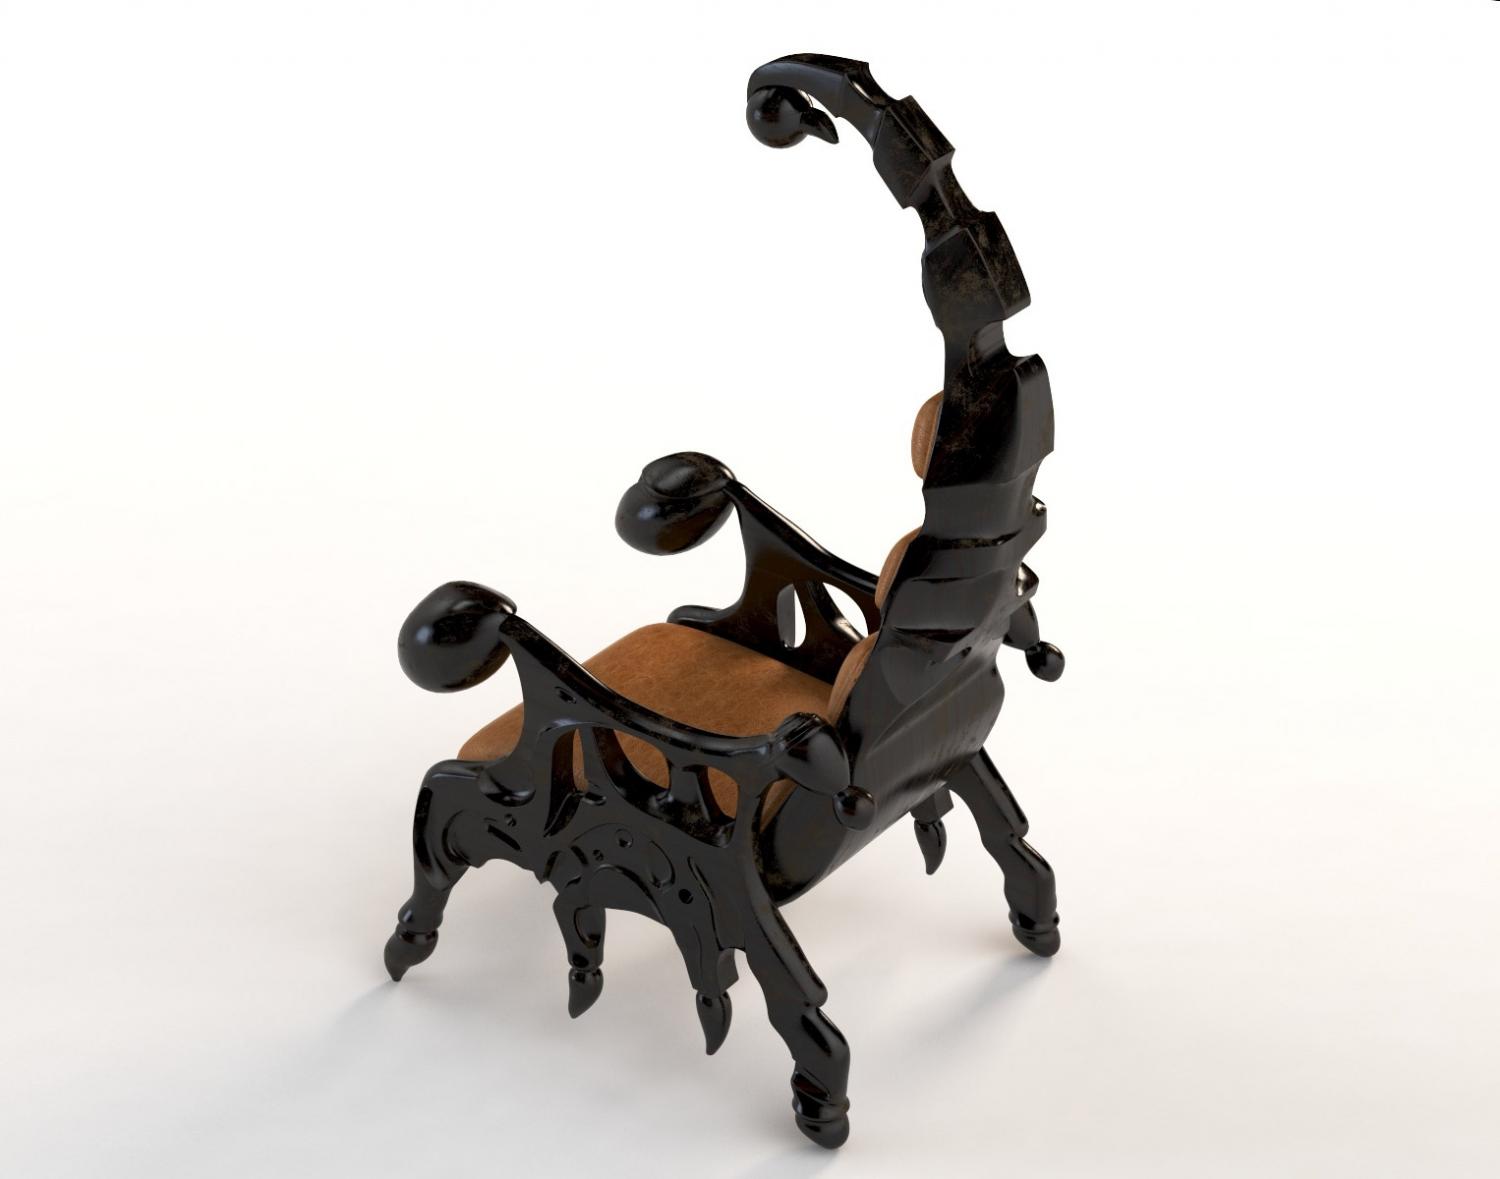 Scorpion Chair - Giant evil villain chair